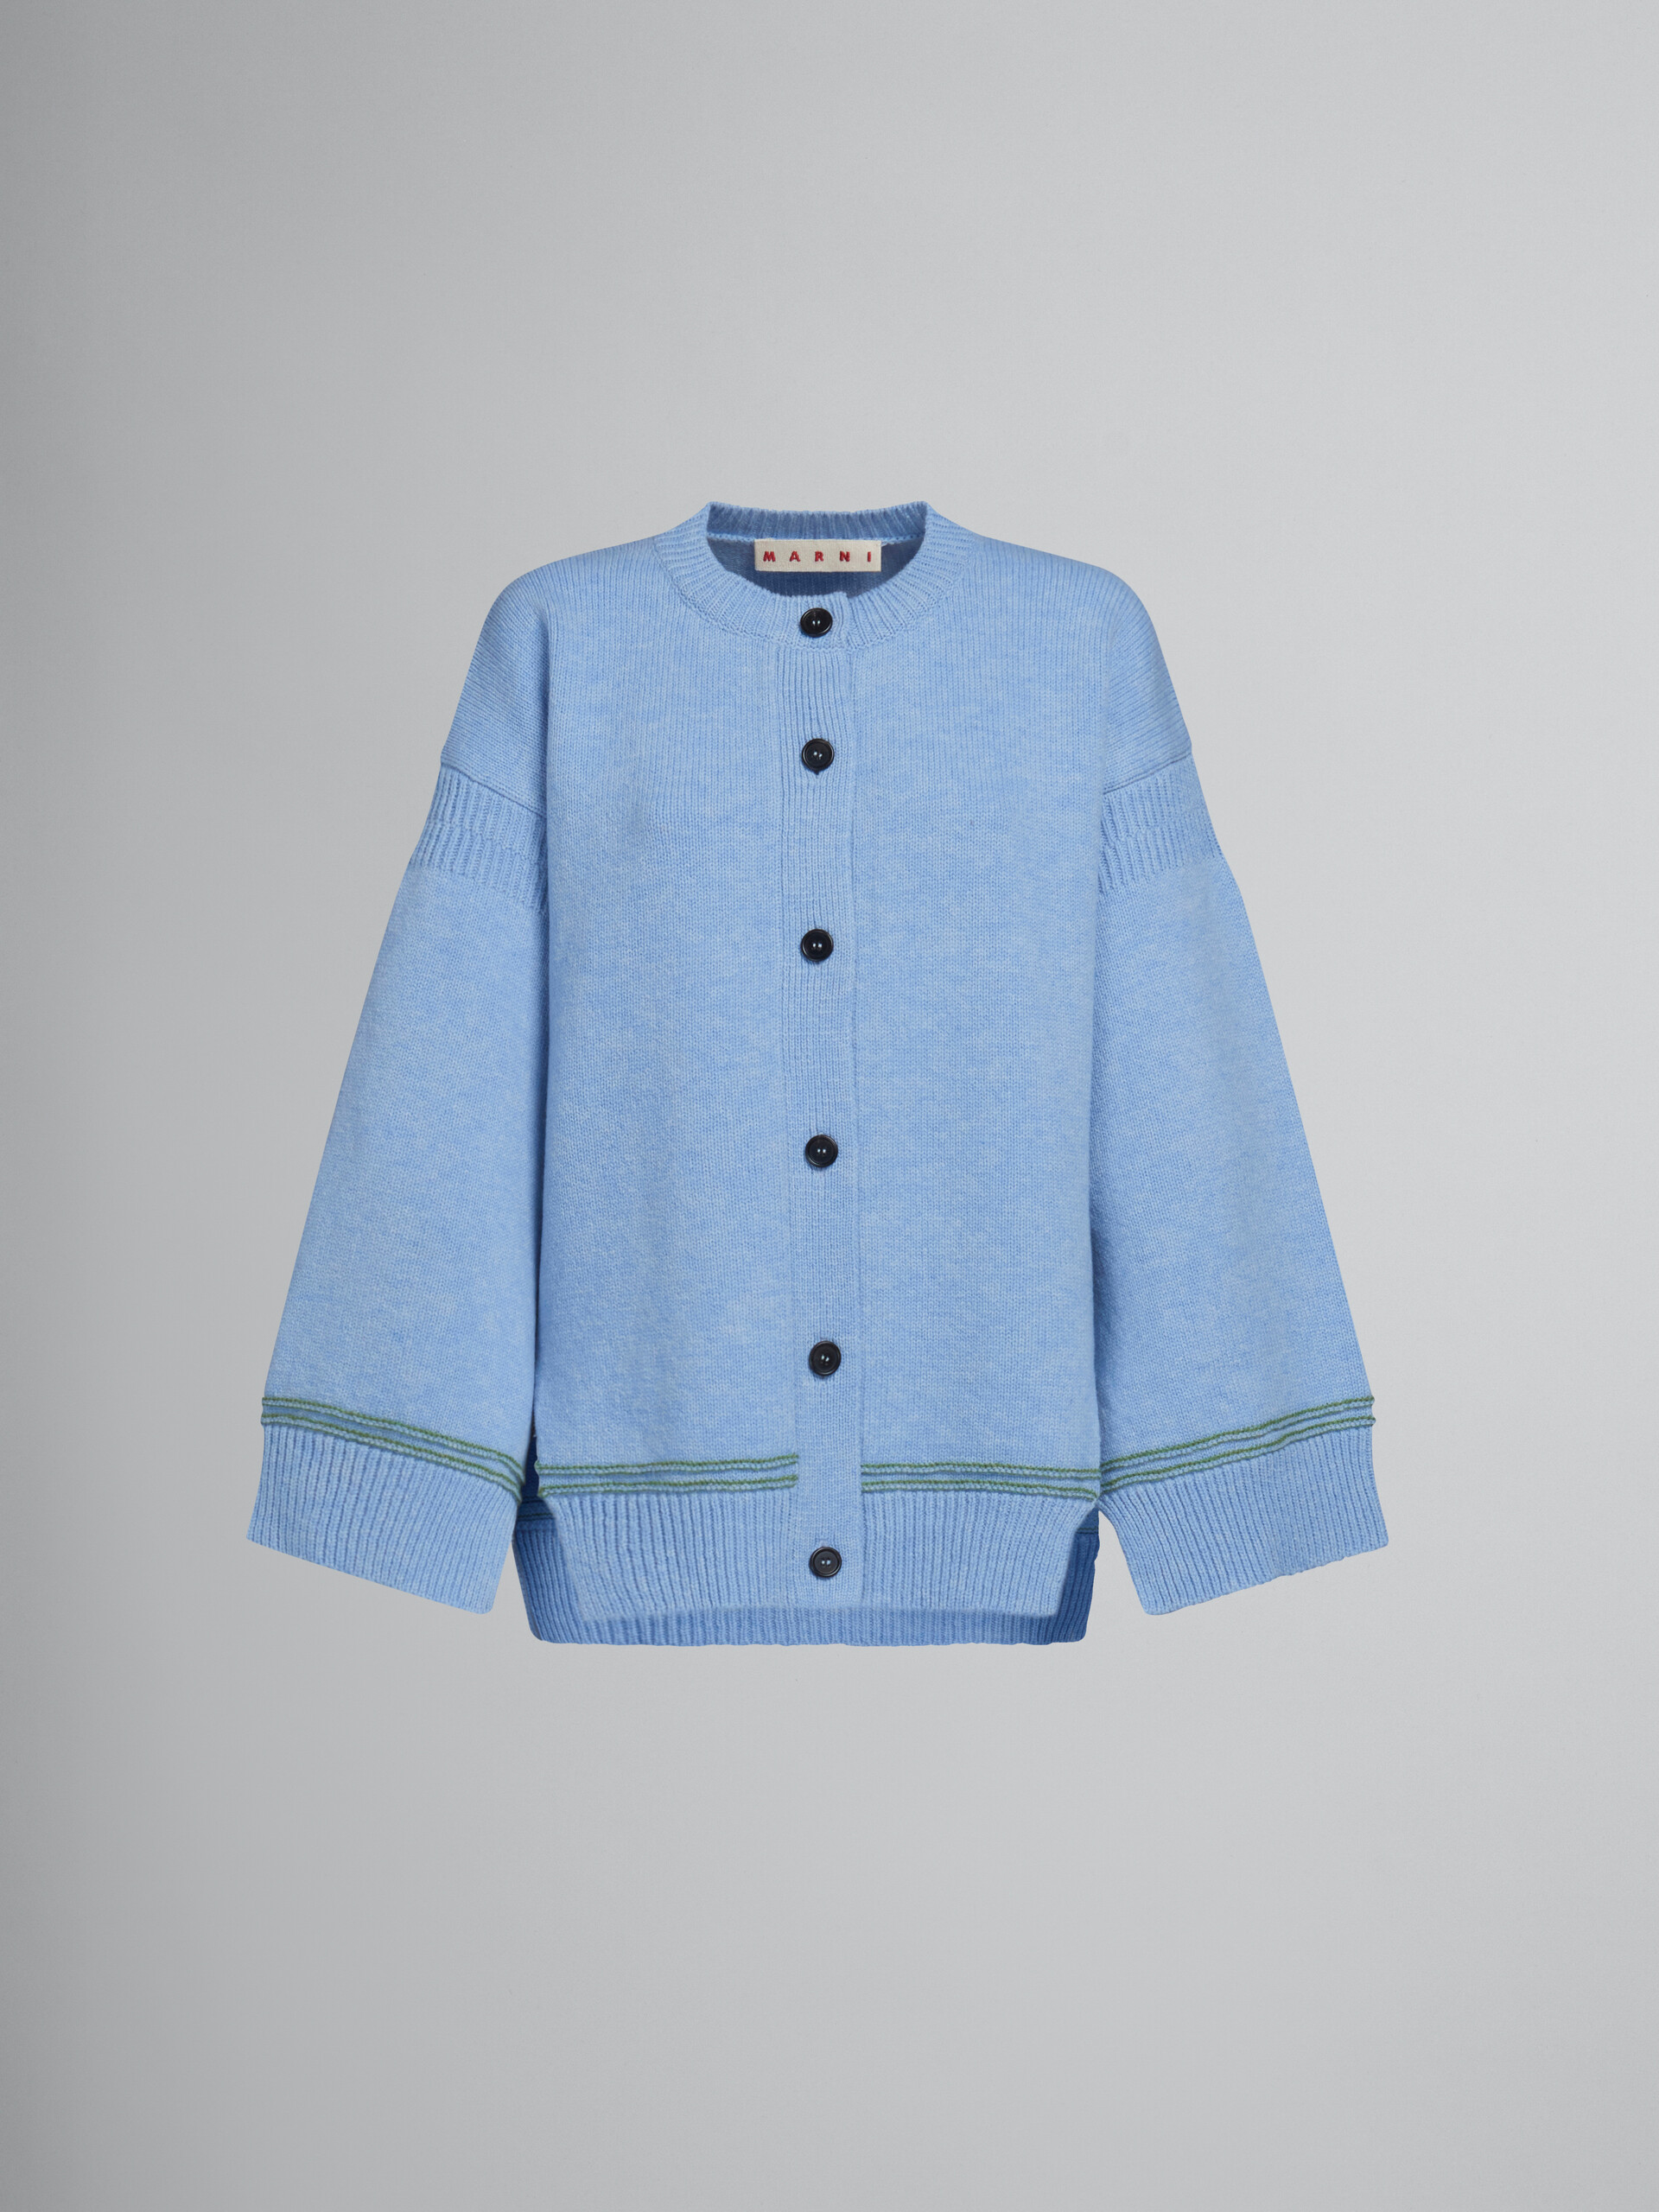 Cárdigan azul de lana con manga de tipo kimono - jerseys - Image 1